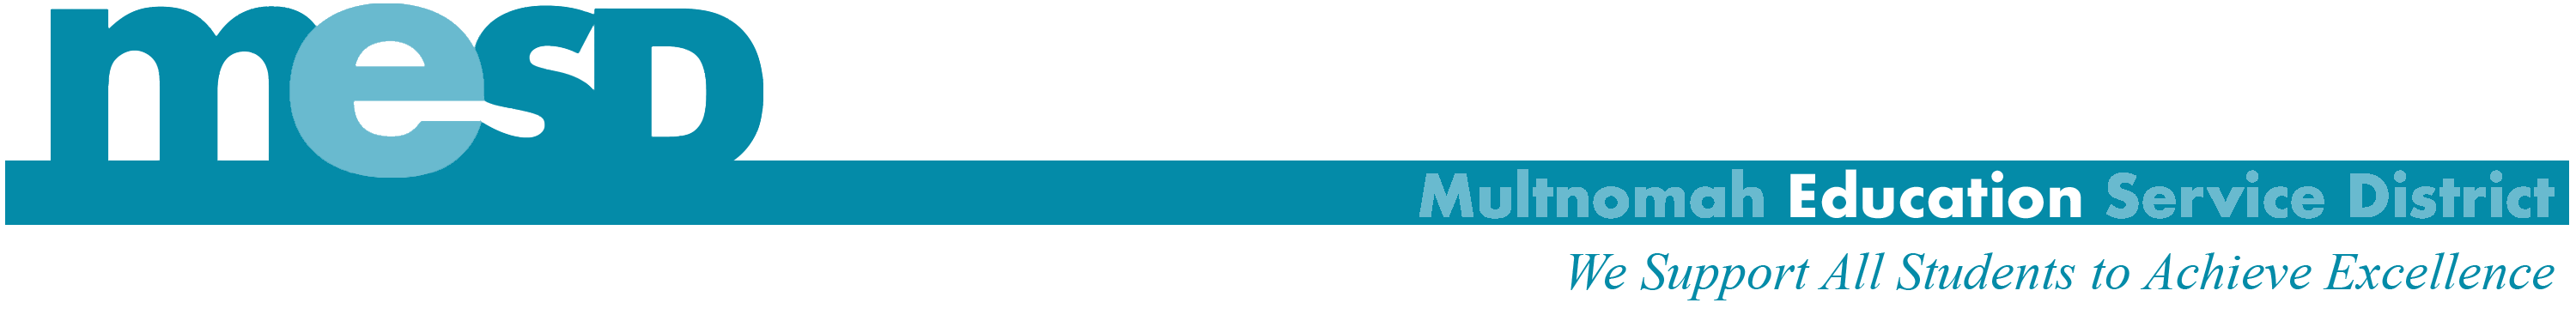 MESD Logo